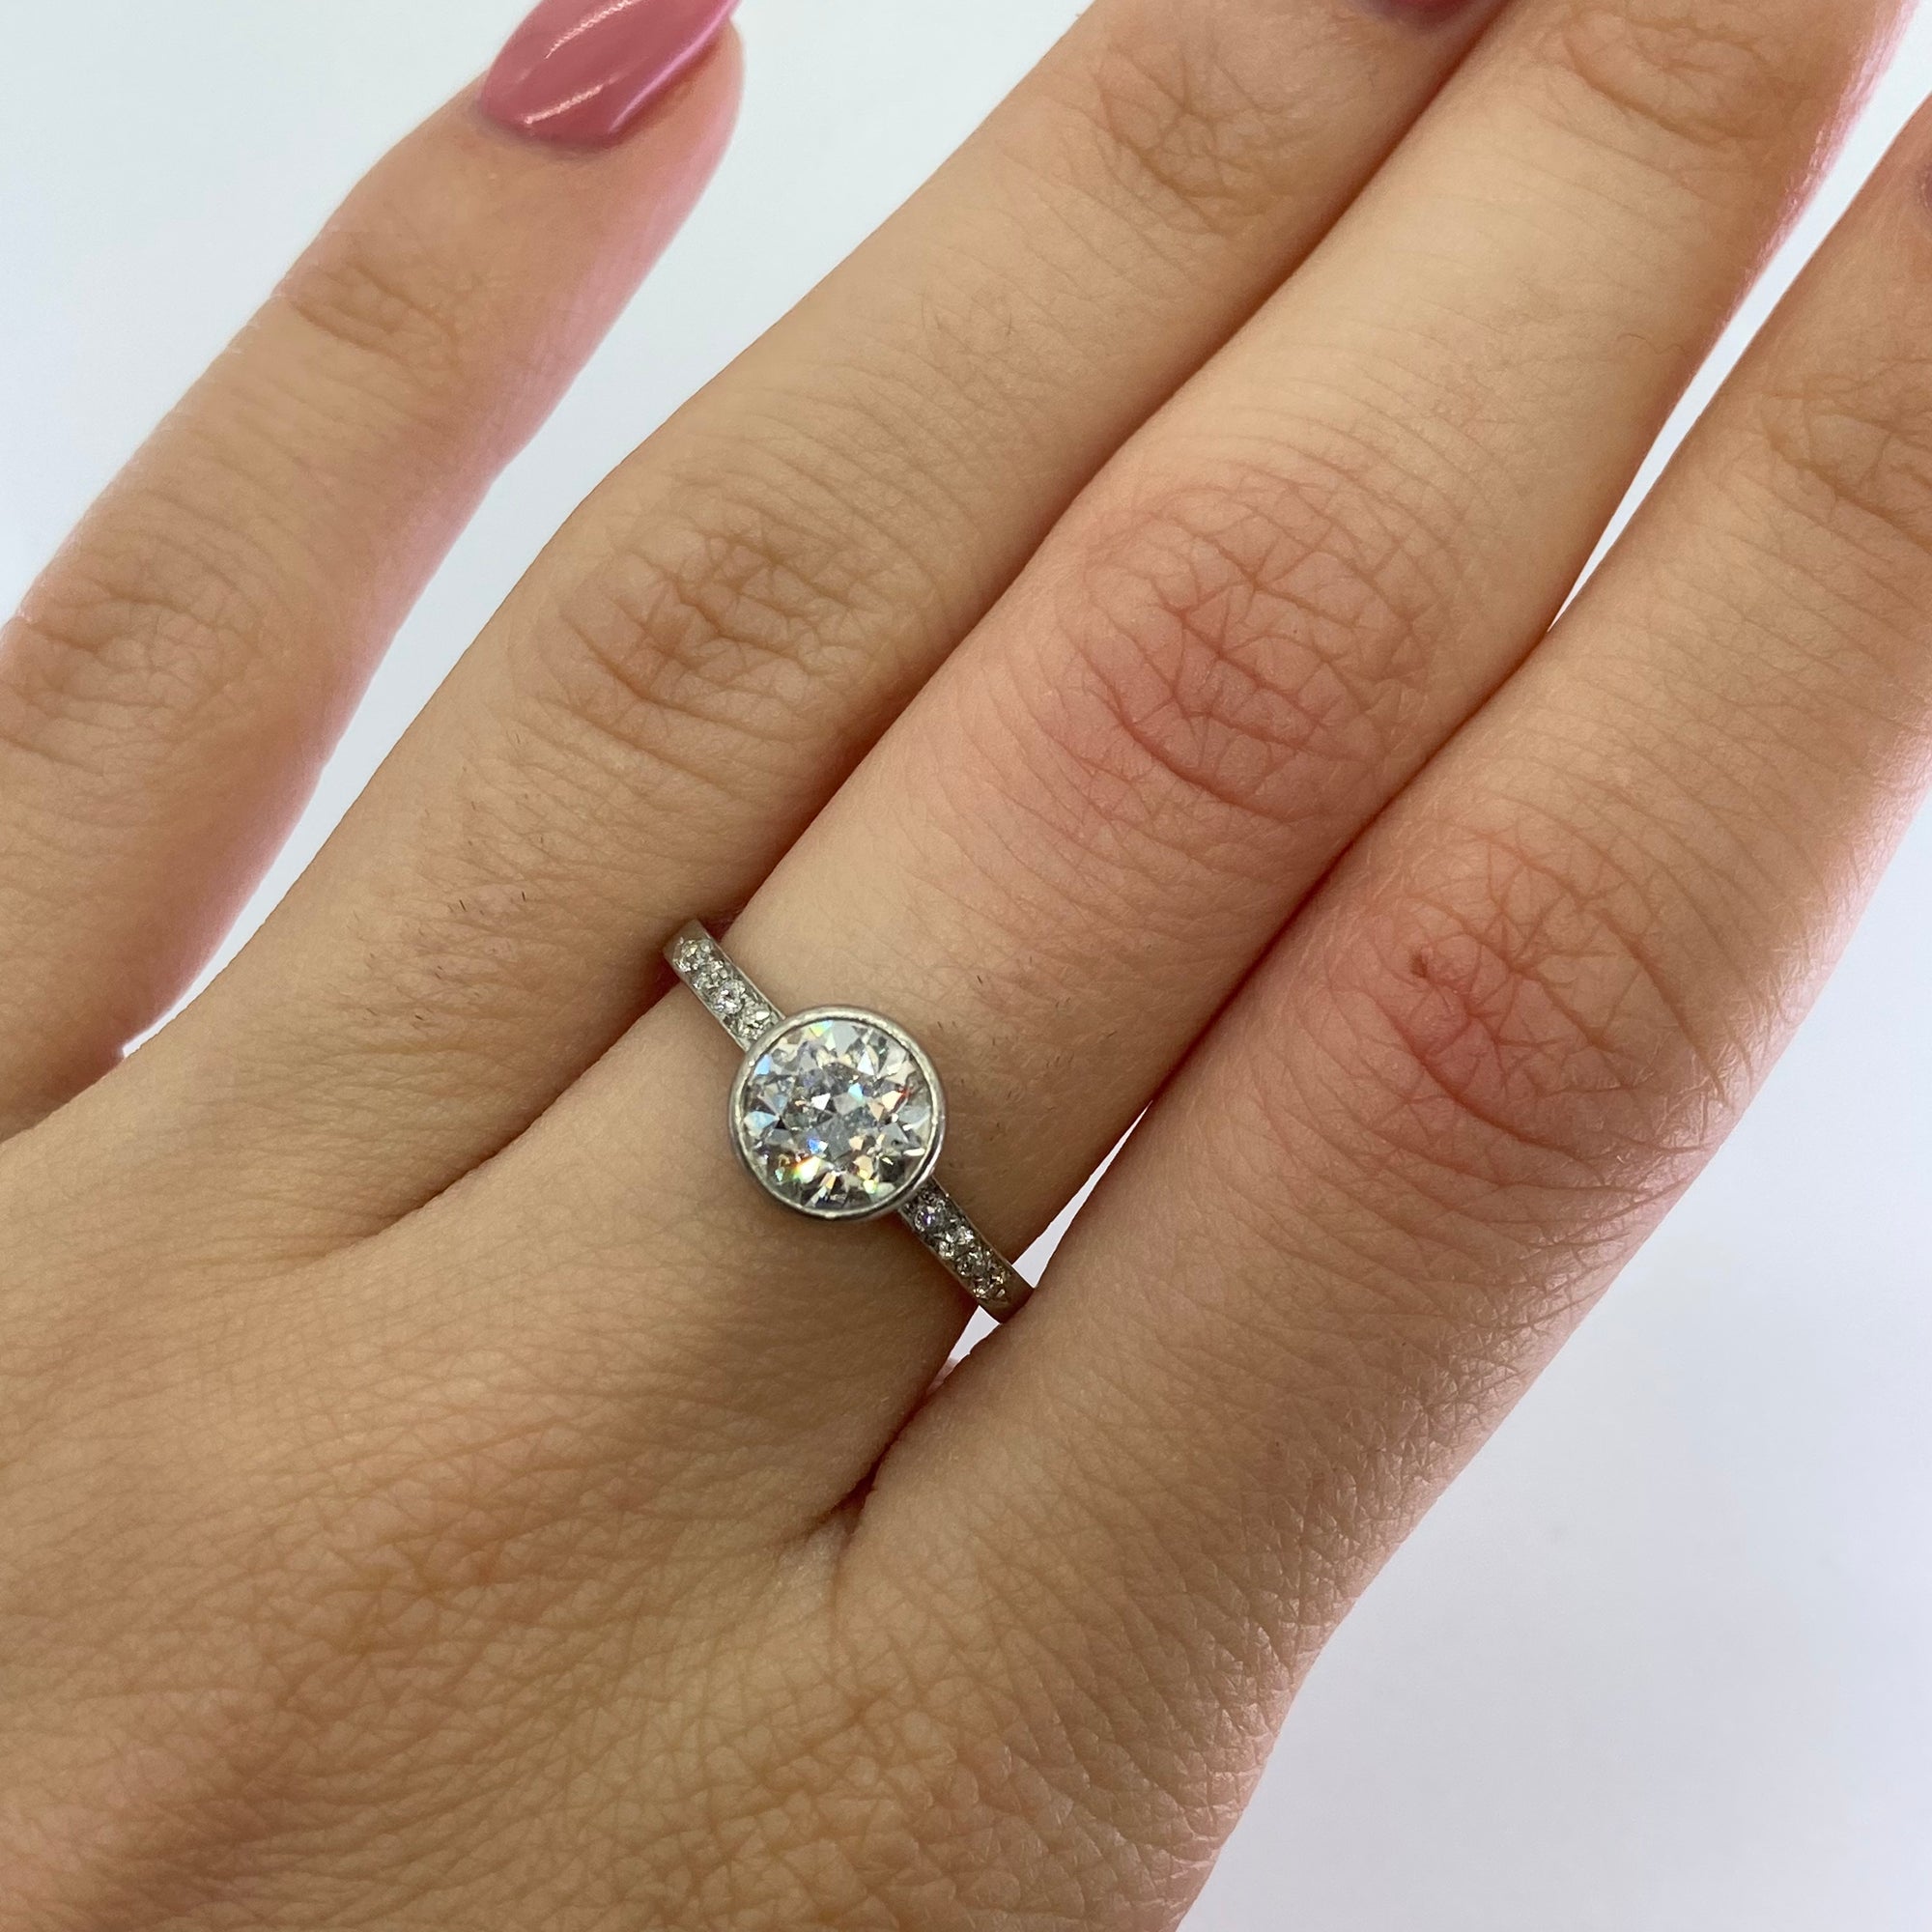 Art Deco Old European Cut Engagement Ring in Platinum | 1.33ctw | SZ 5.5 |